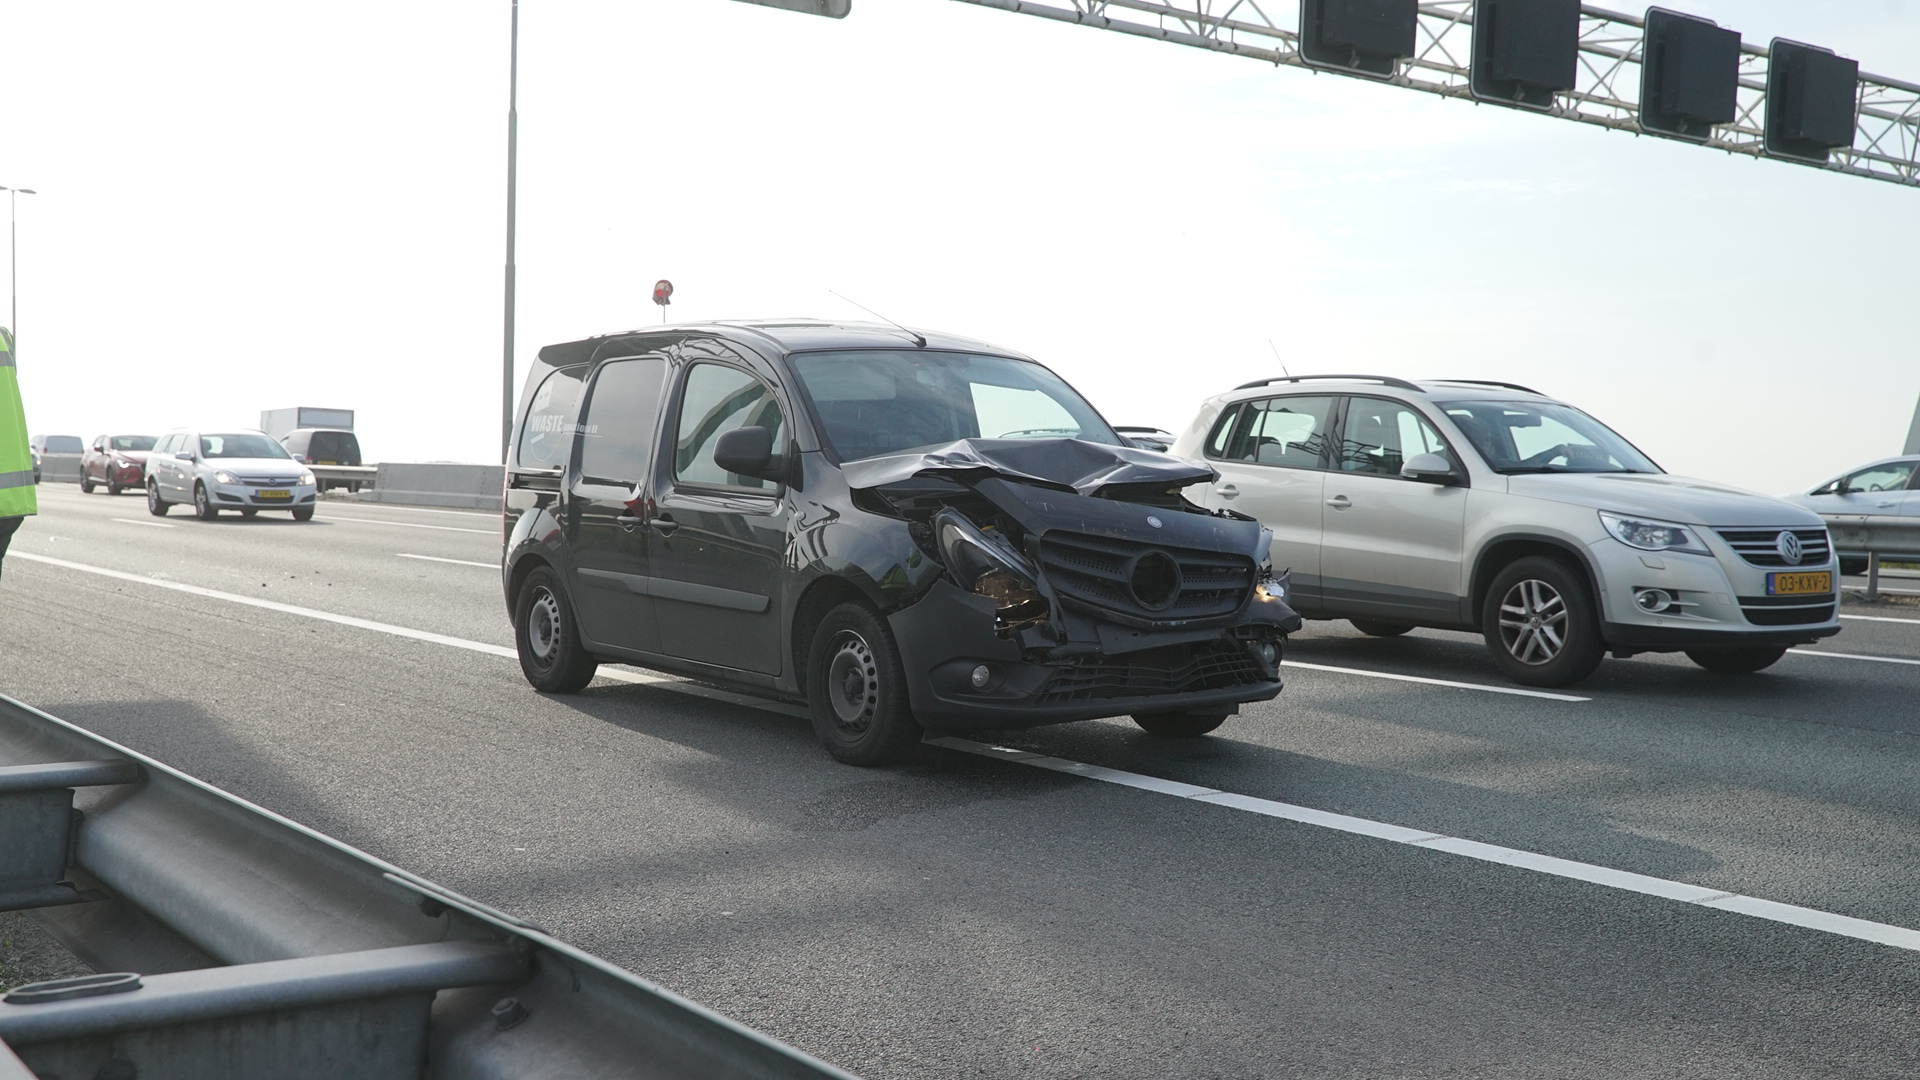 A1 bij Deventer weer vrij na ongeluk.